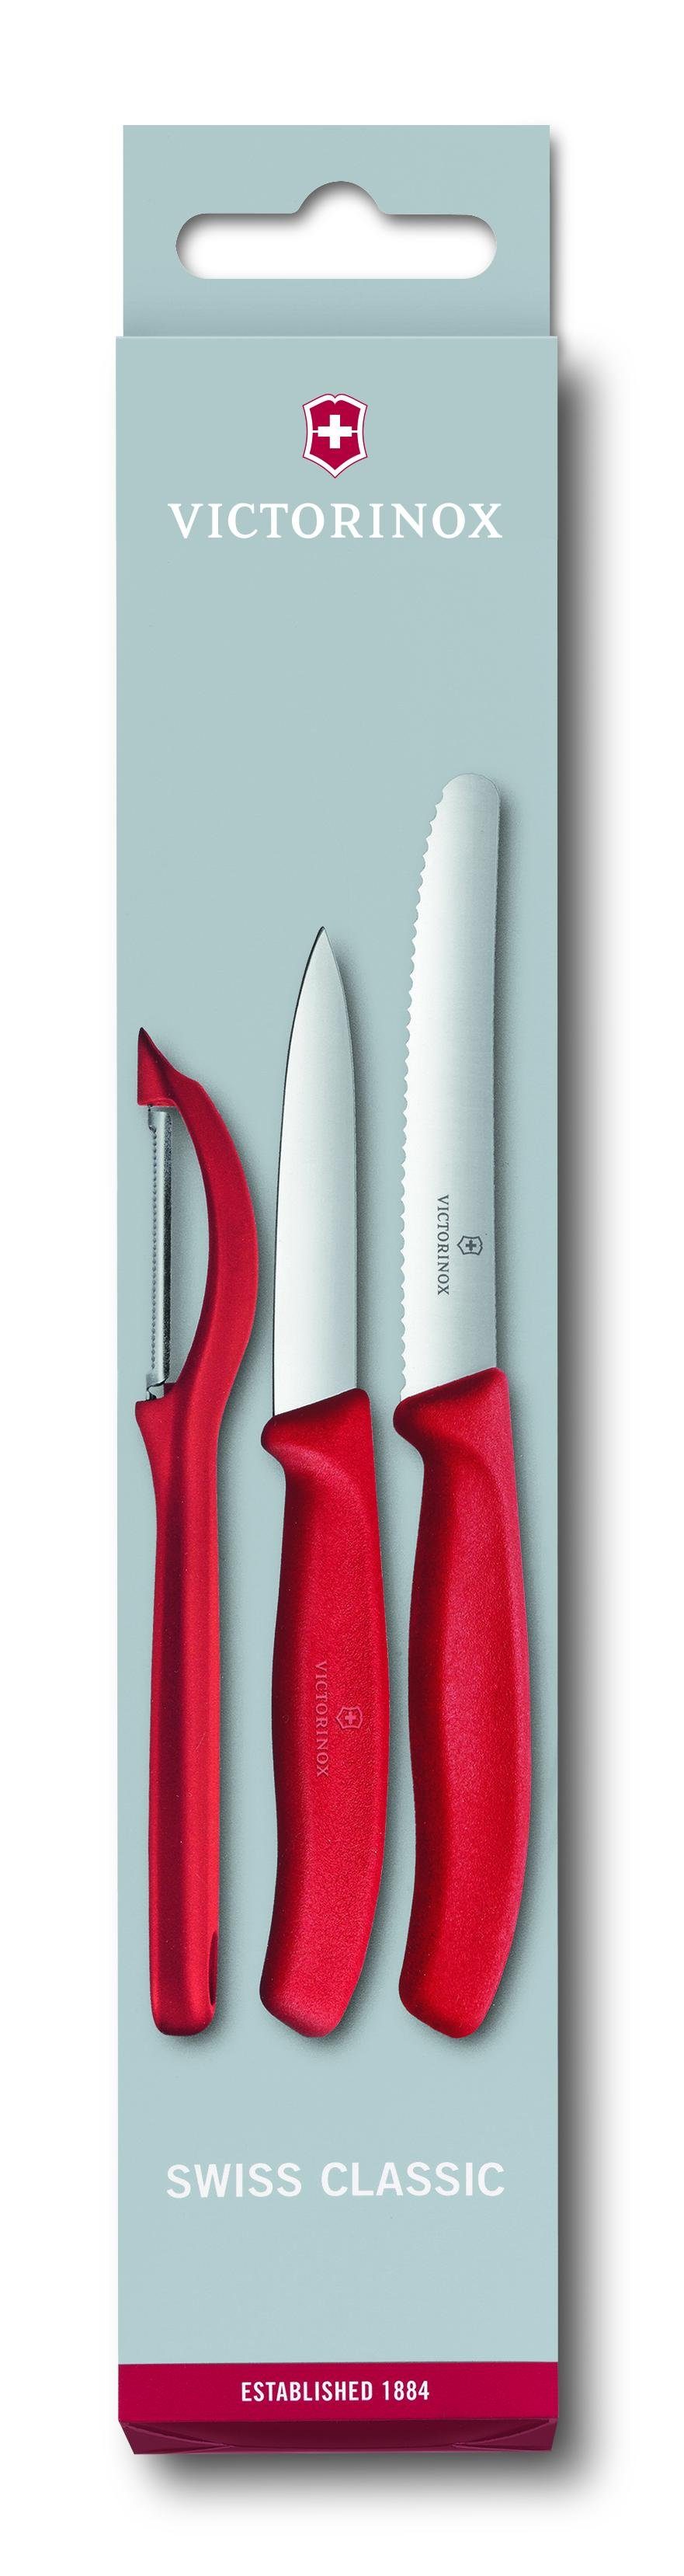 Victorinox Taschenmesser Swiss rot Gemüsemesser-Set Classic Schäler, 3-teilig, mit